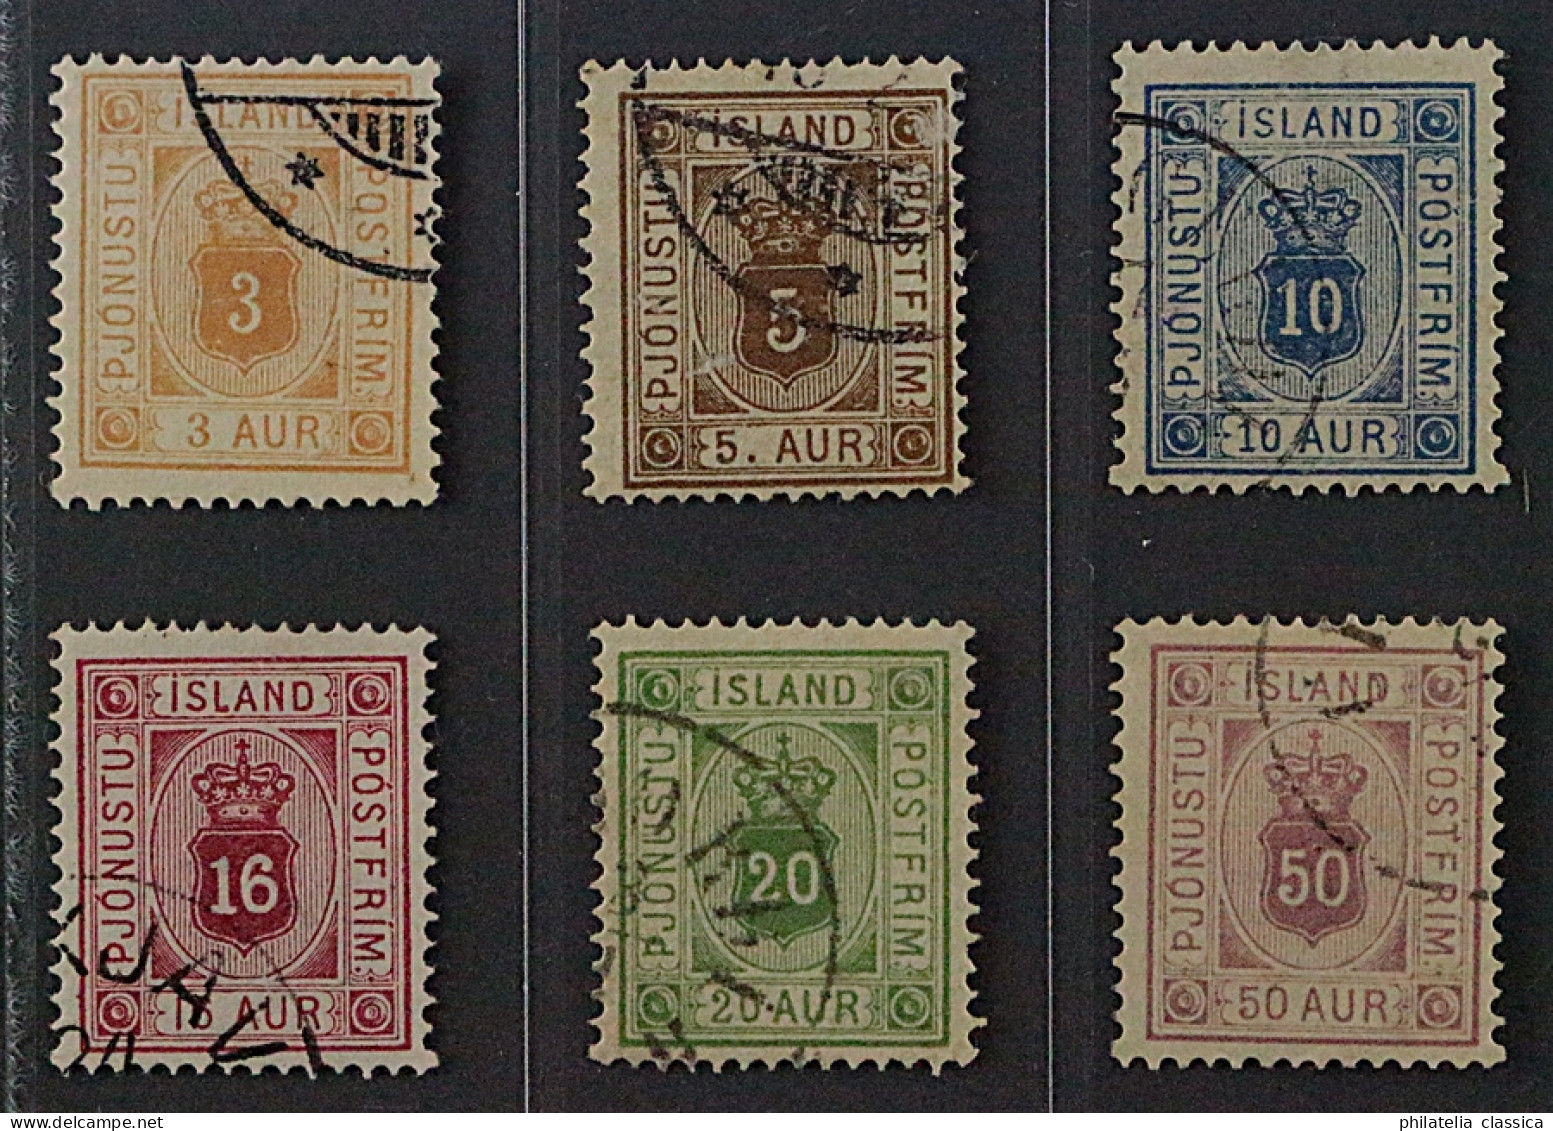 Island  3-8 A,  Dienstmarken 1876/95, Zähnung 14, Sauber Gestempelt, KW 248,- € - Dienstzegels